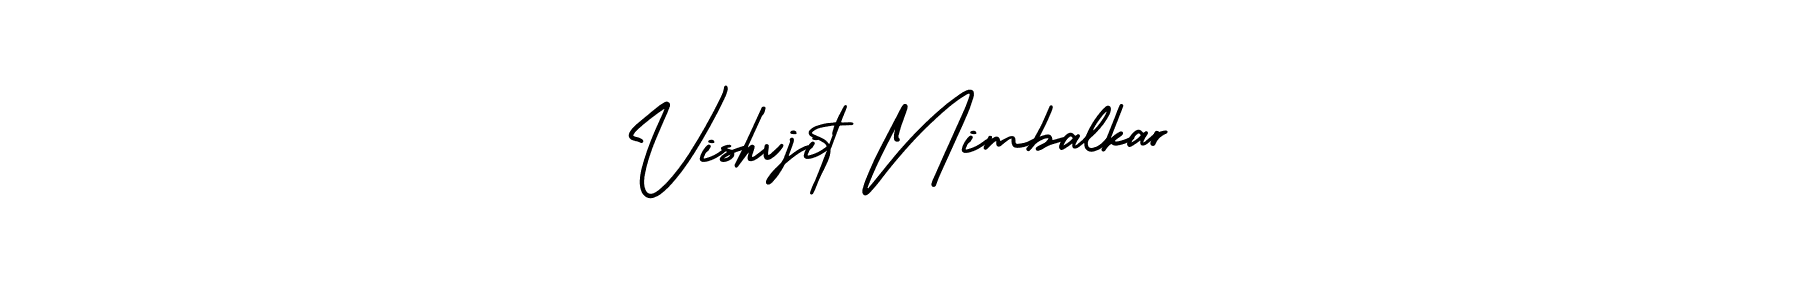 99+ Vishvjit Nimbalkar Name Signature Style Ideas | Good Electronic ...